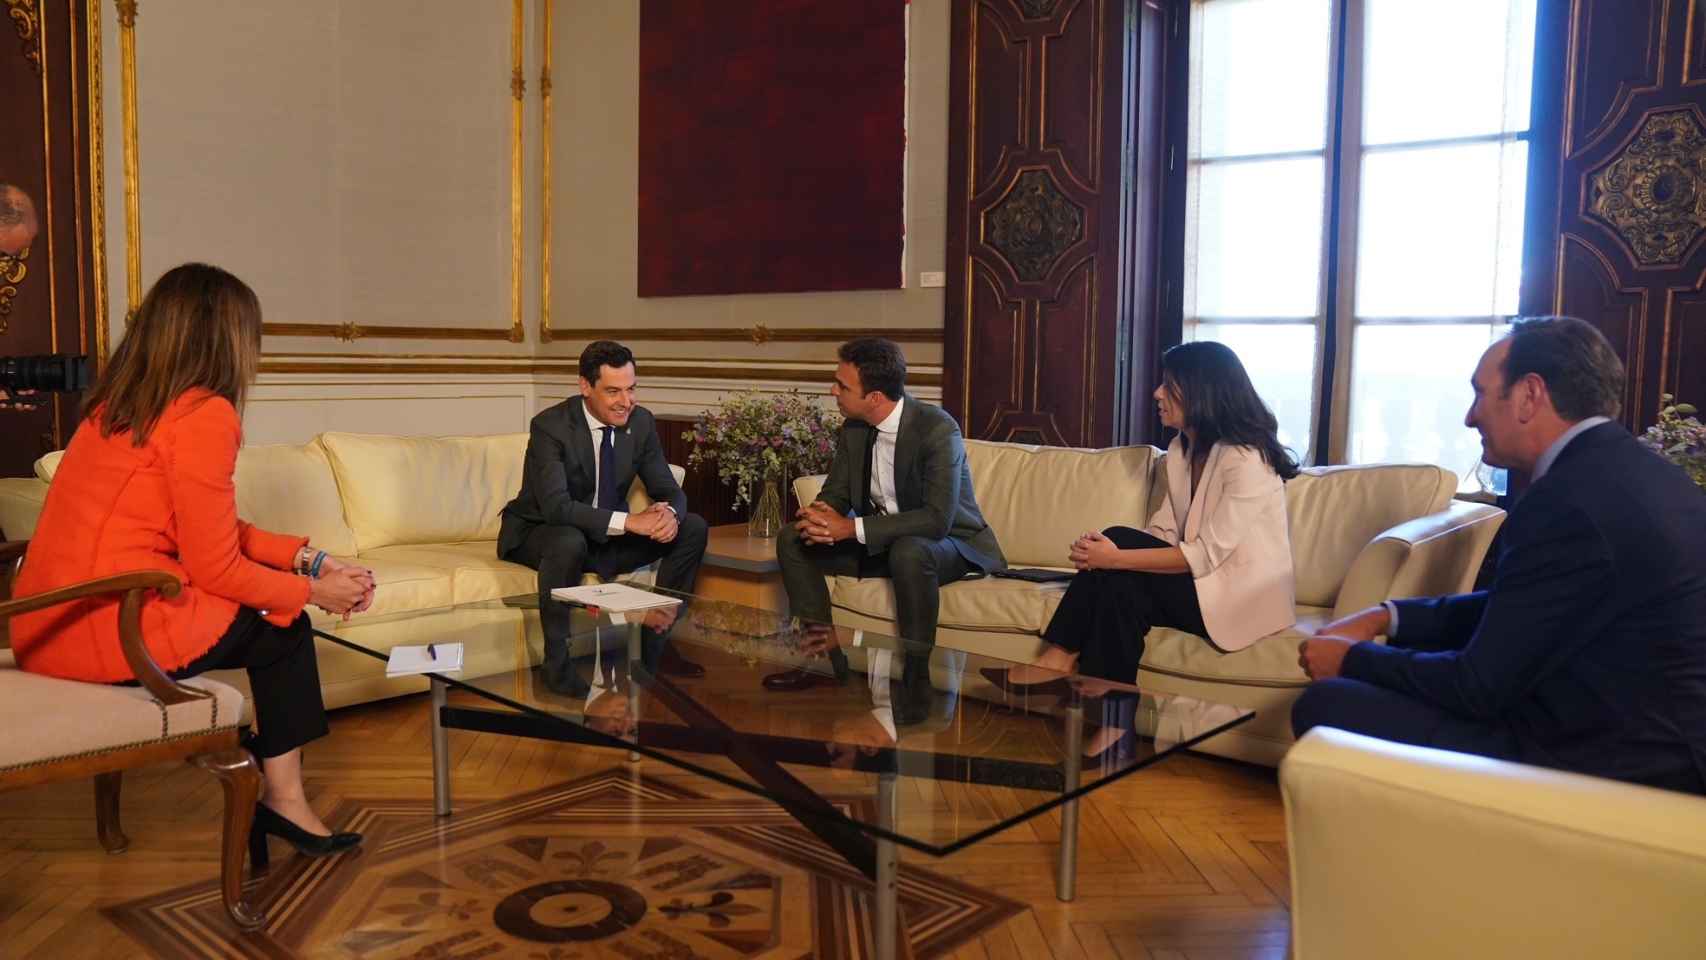 Imagen de la reunión entre el presidente de la Junta de Andalucía, Juan Manuel Moreno Bonilla, y los representantes de Fadeco Promotores.